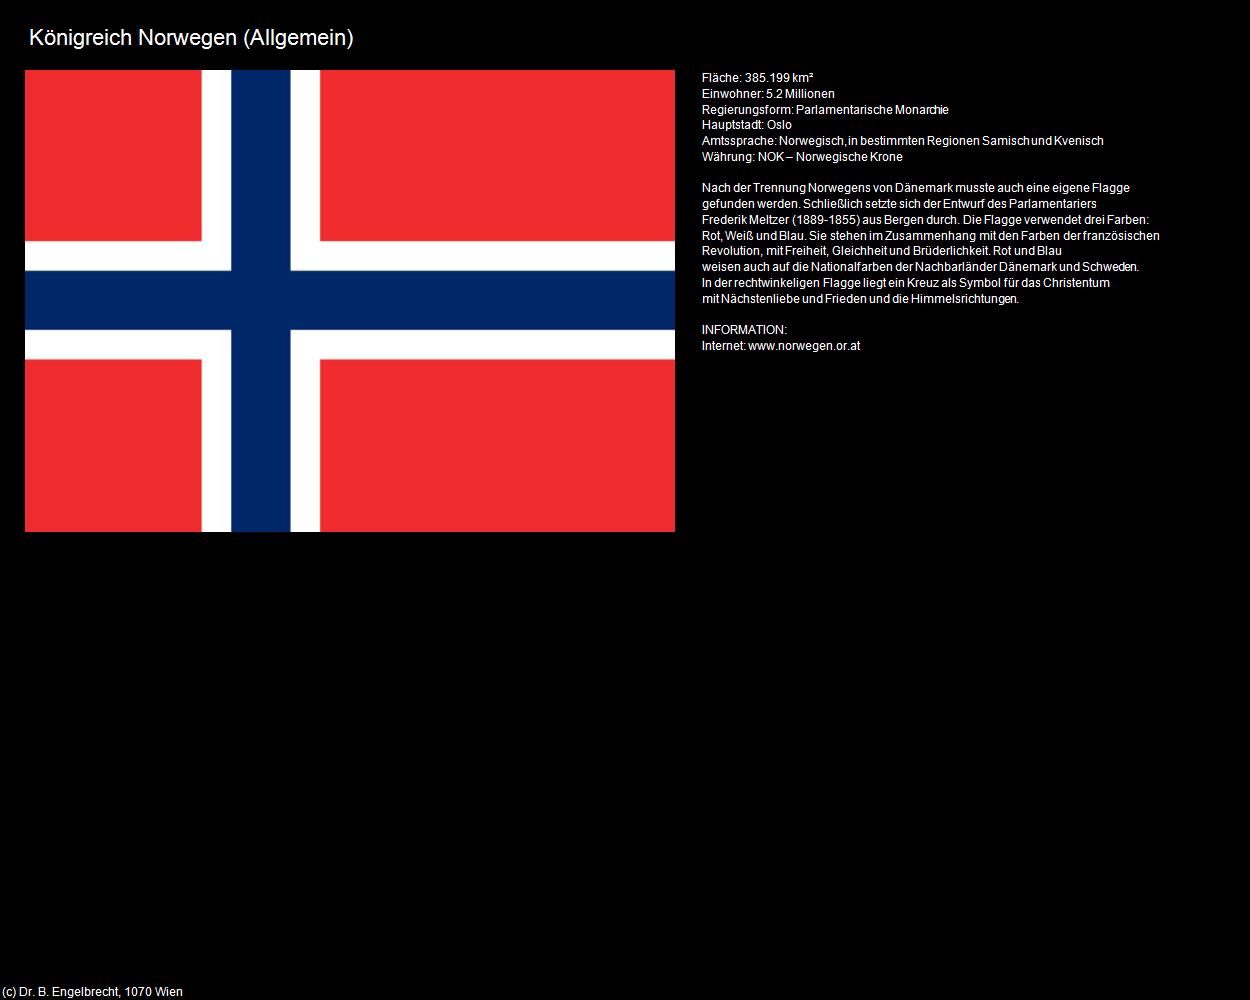 Königreich Norwegen (Allgemein) in Kulturatlas-REISE nach NORWEGEN